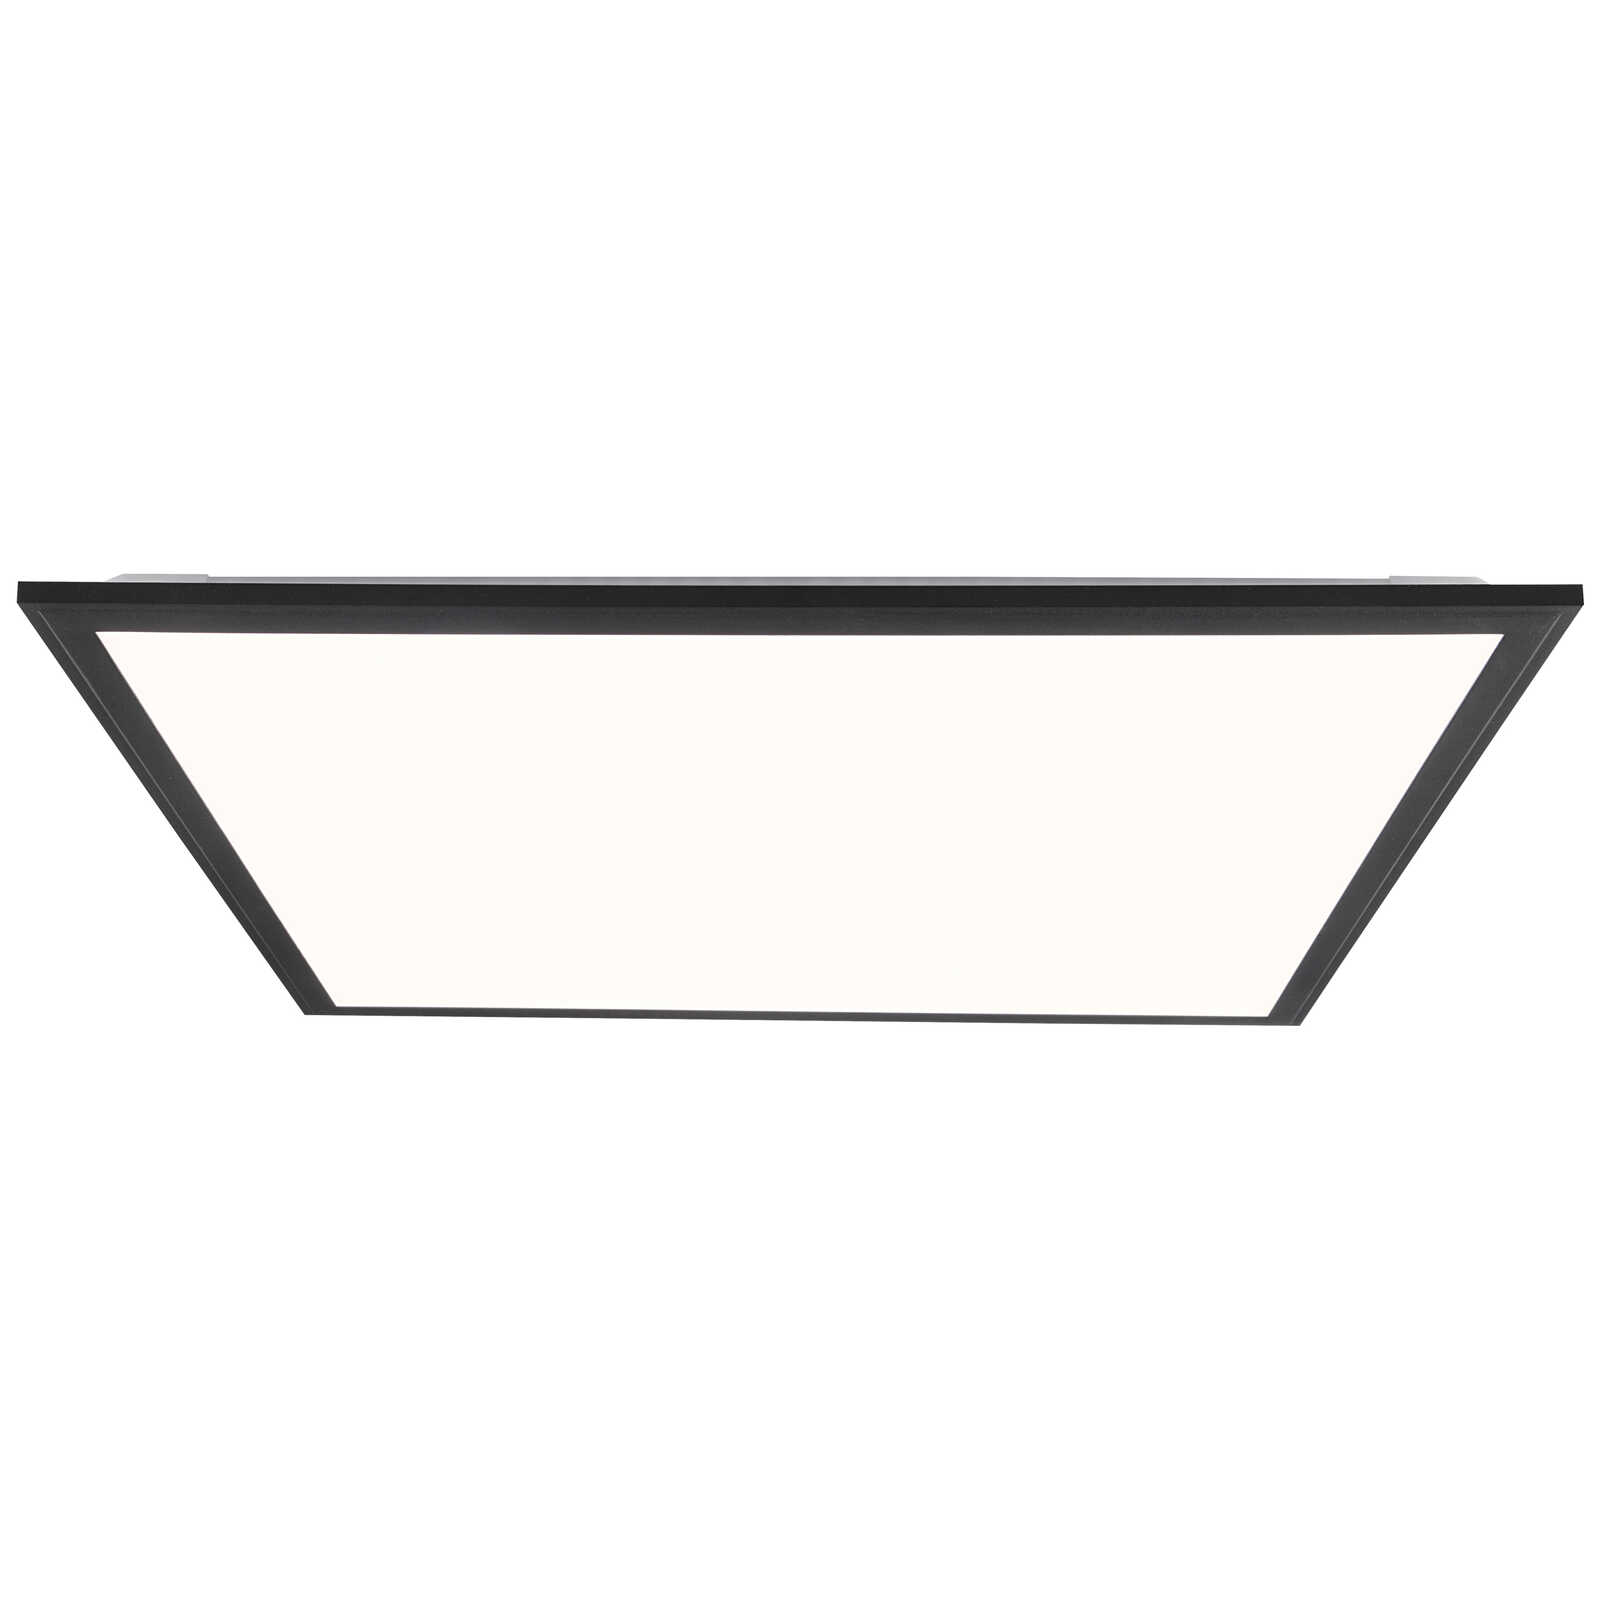             Plastic ceiling light - Albert 4 - Black
        